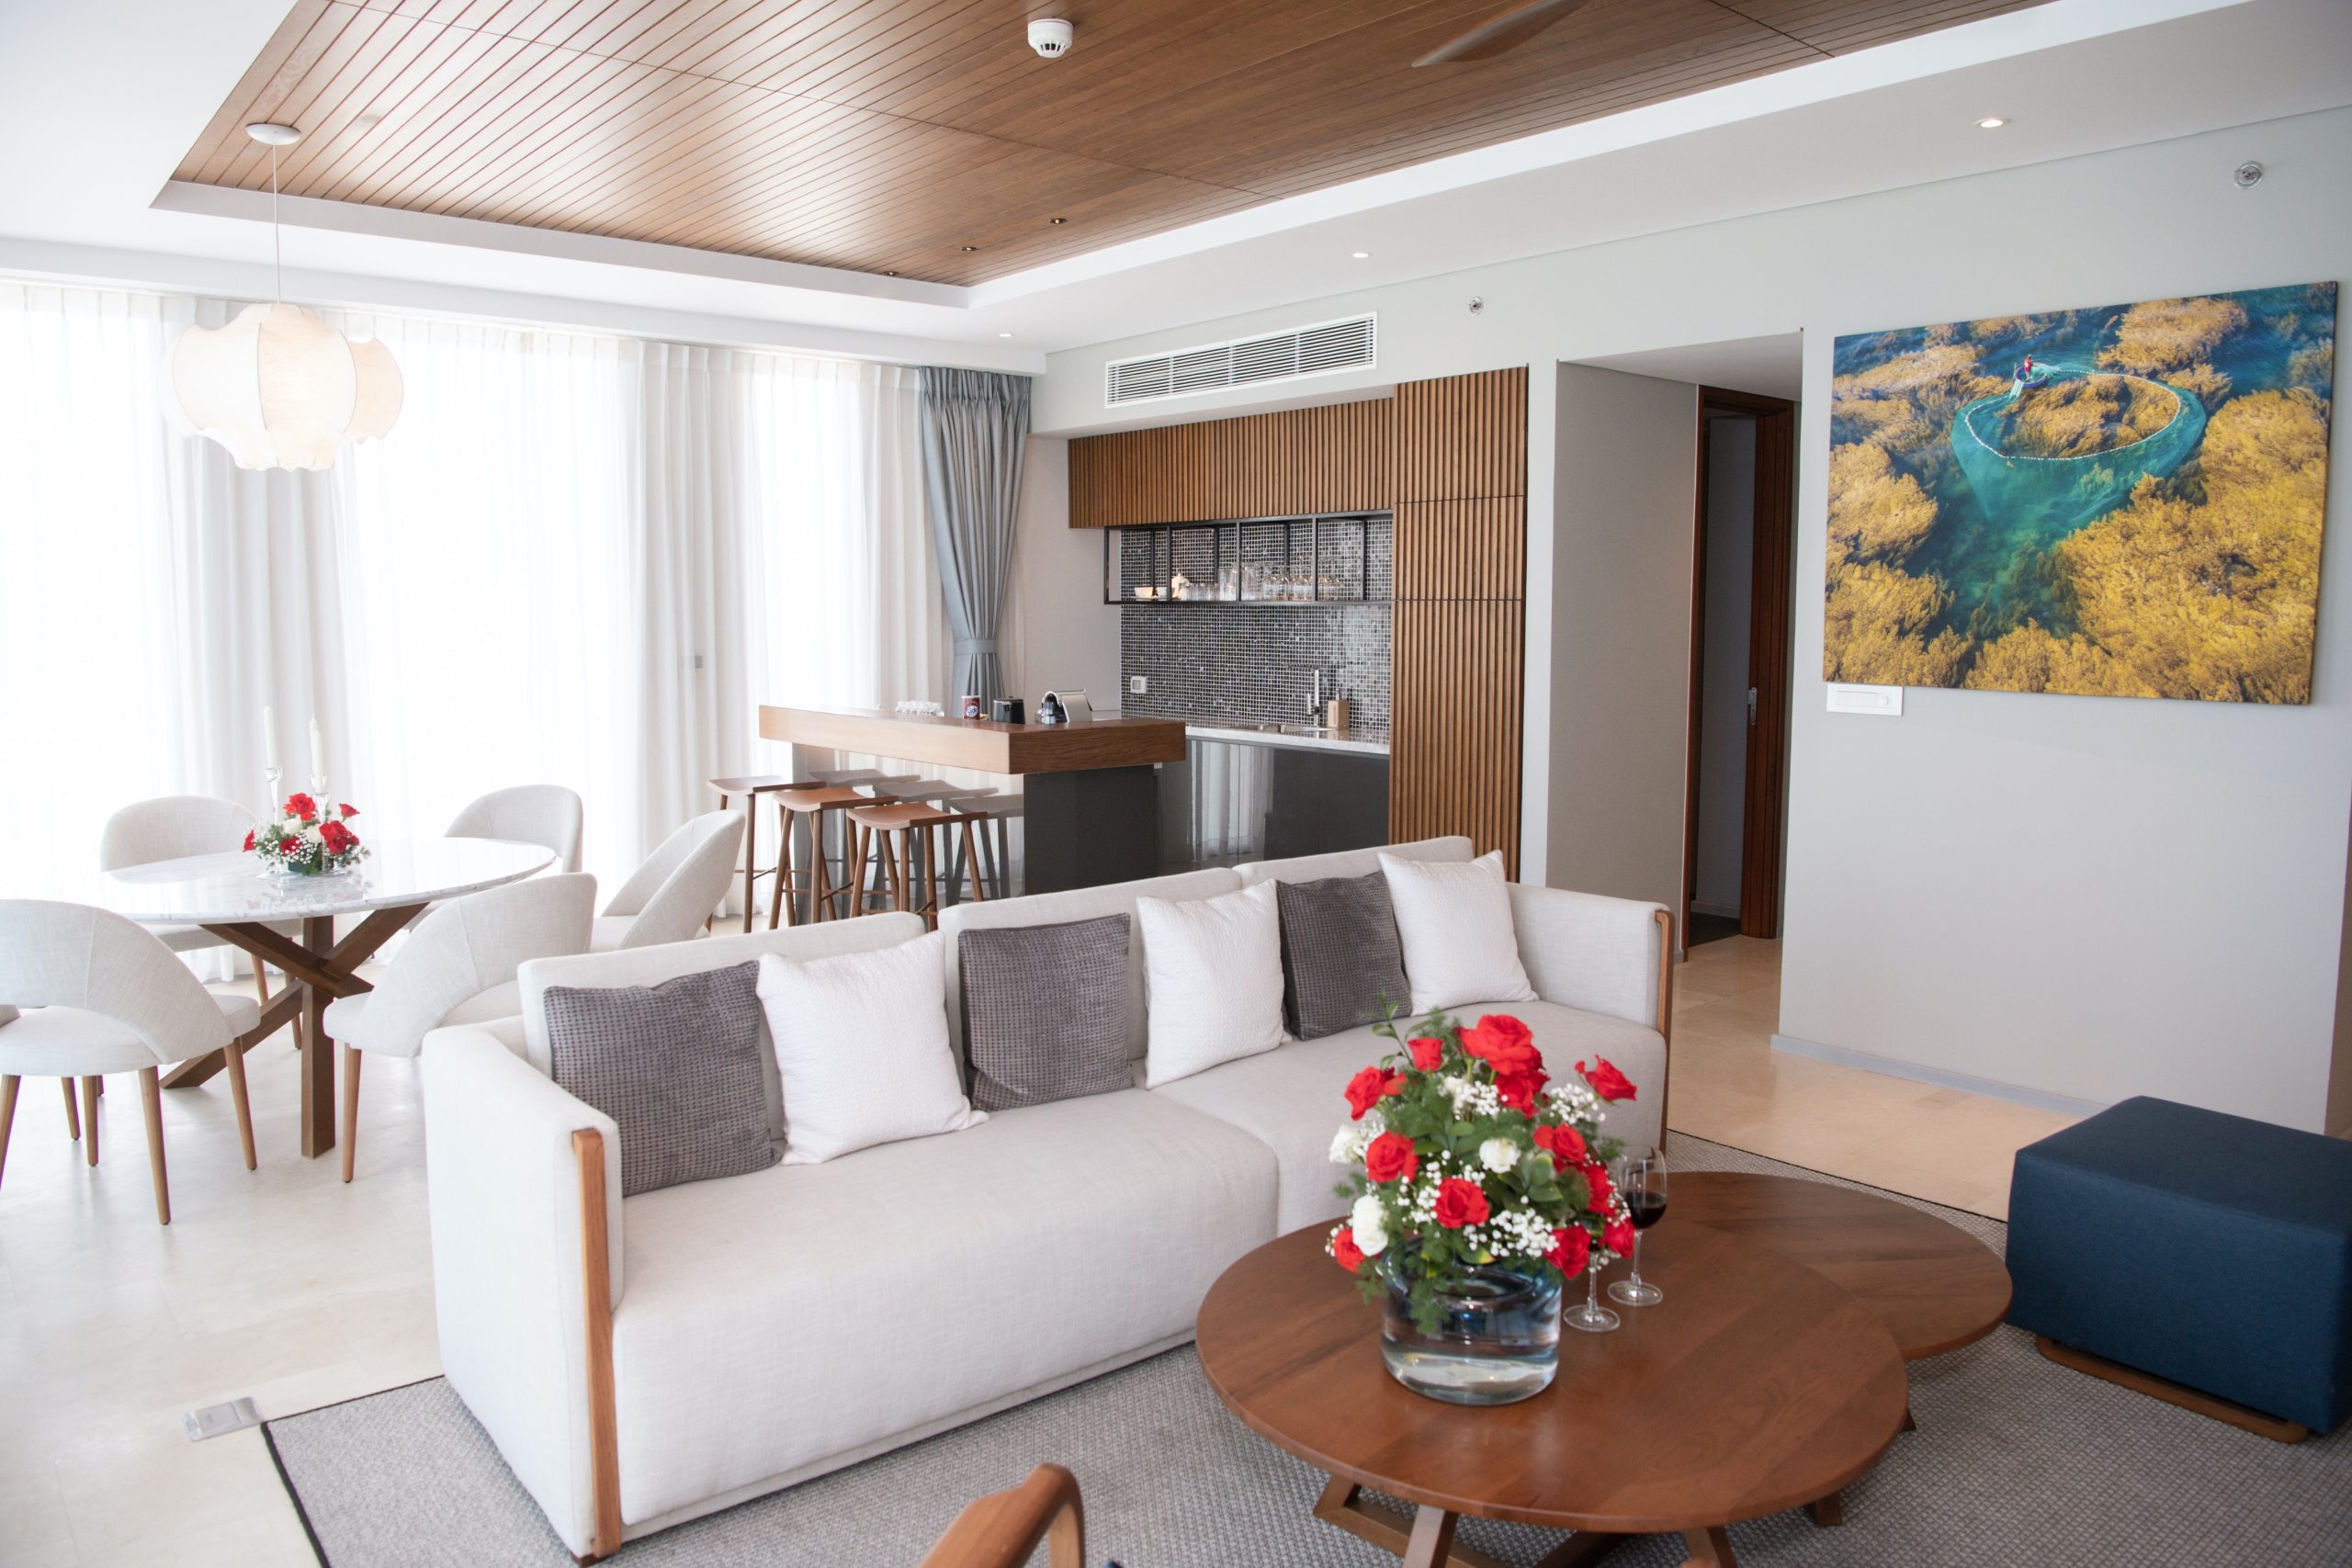 Chuỗi khách sạn ANYA Quy Nhơn – Đơn vị lưu trú chính thức của MWVN 2022